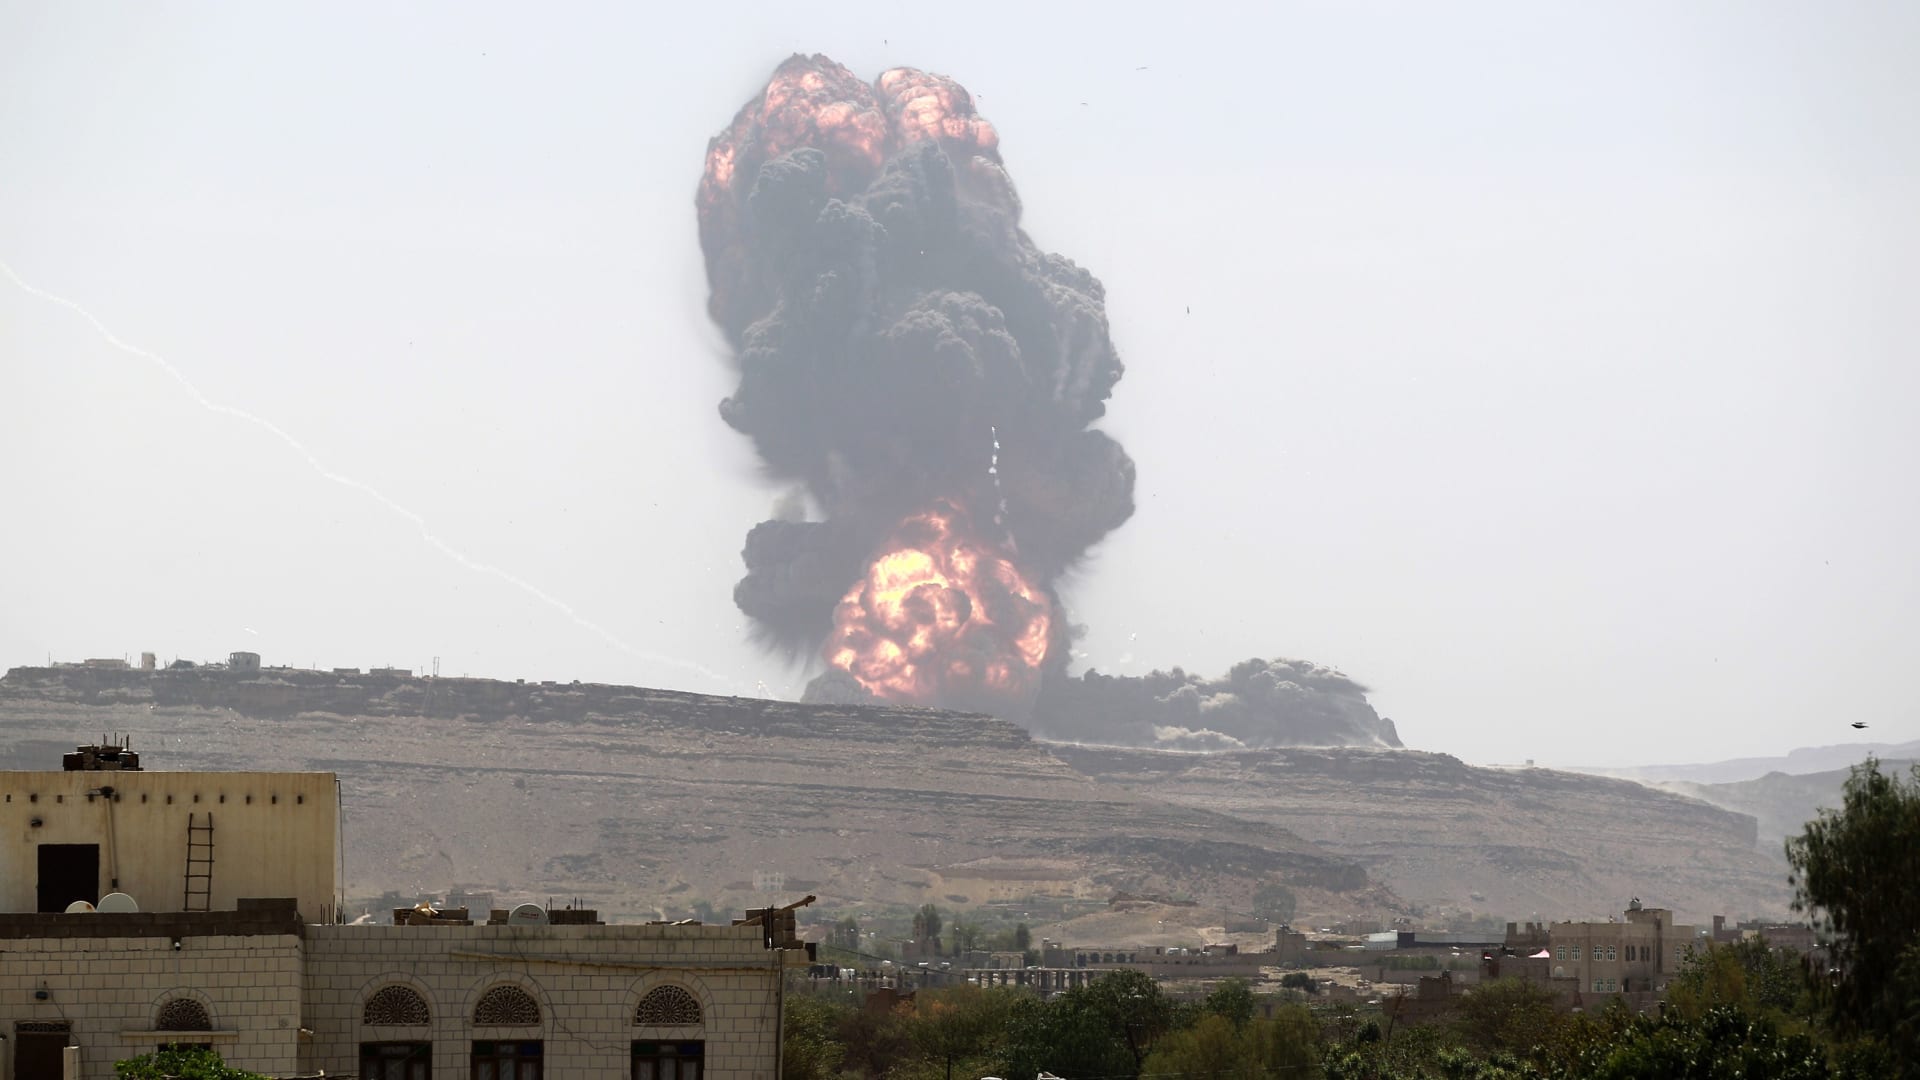 التحالف يواصل ضرباته الجوية على صنعاء ويدمر منظومة اتصال للطائرات المسيرة